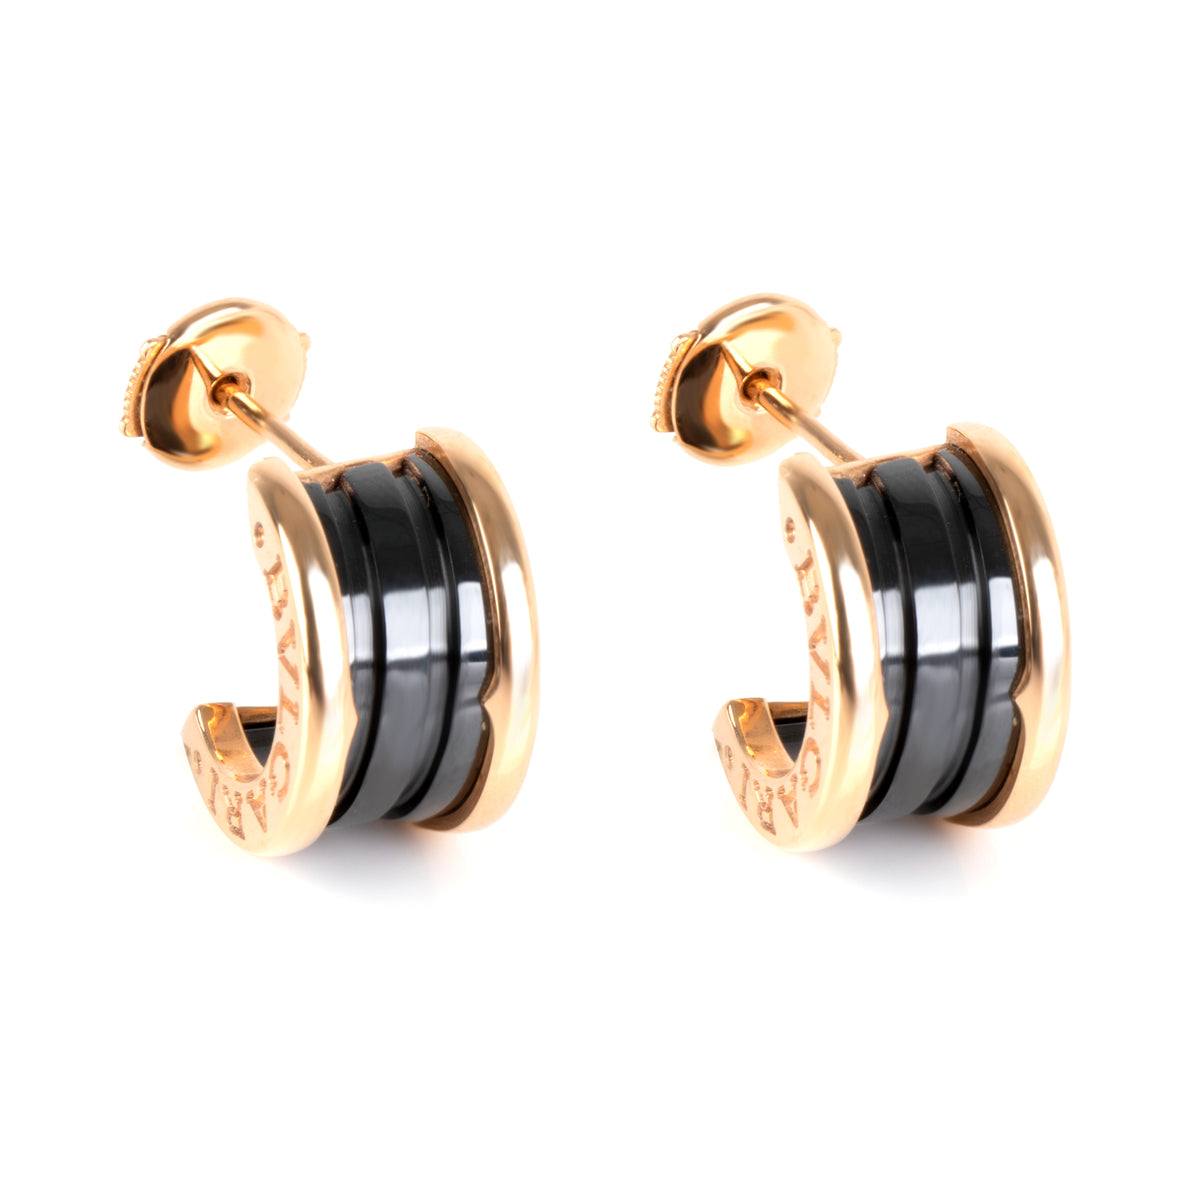 Bulgari B.zero1 Black Ceramic Hoop Earrings in 18K Rose Gold